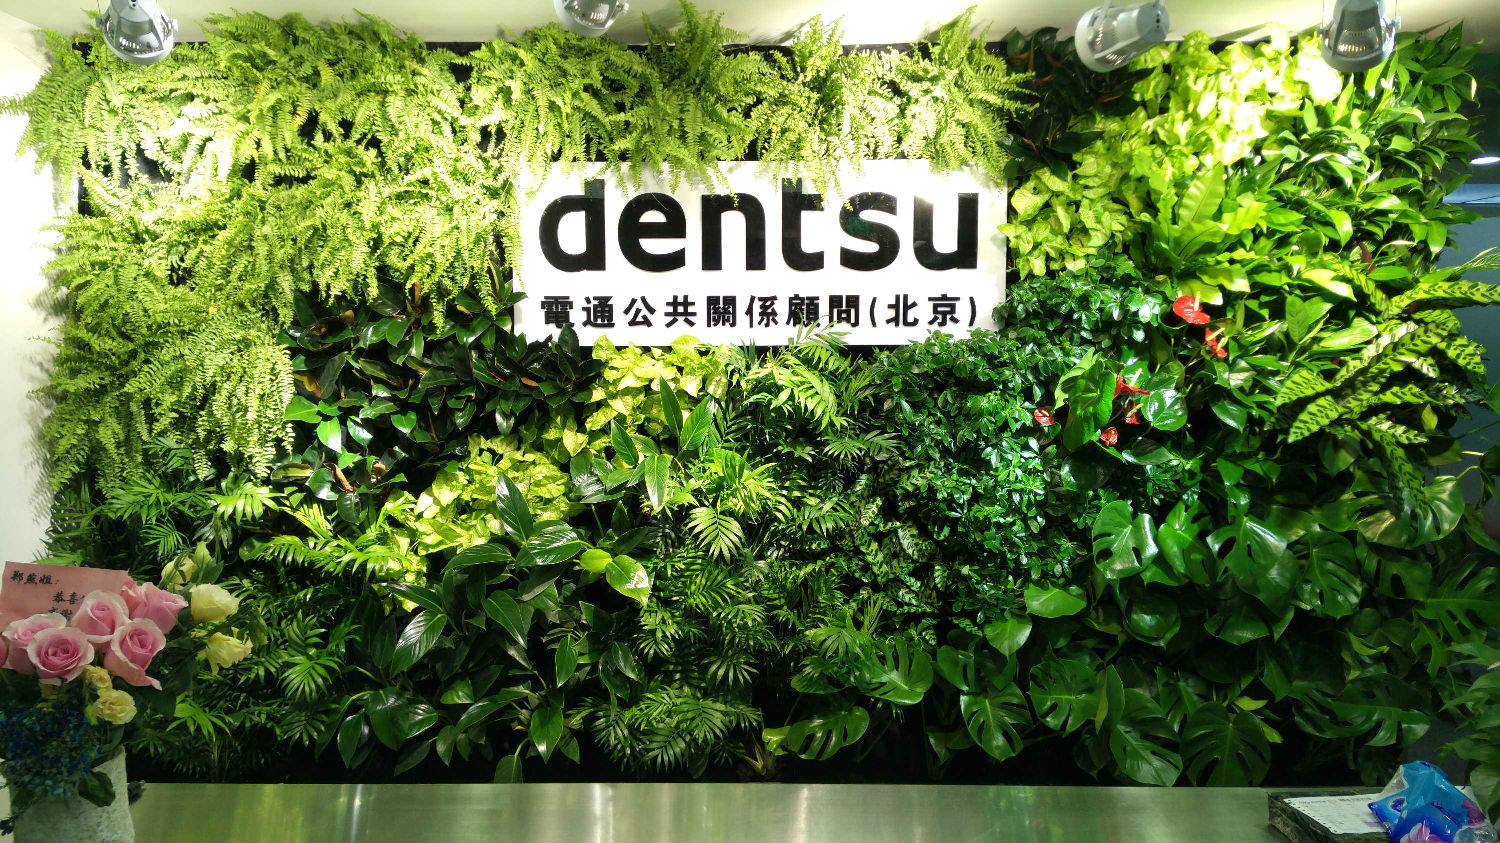 植物墙,植物墙设计,北京植物墙,植物墙公司